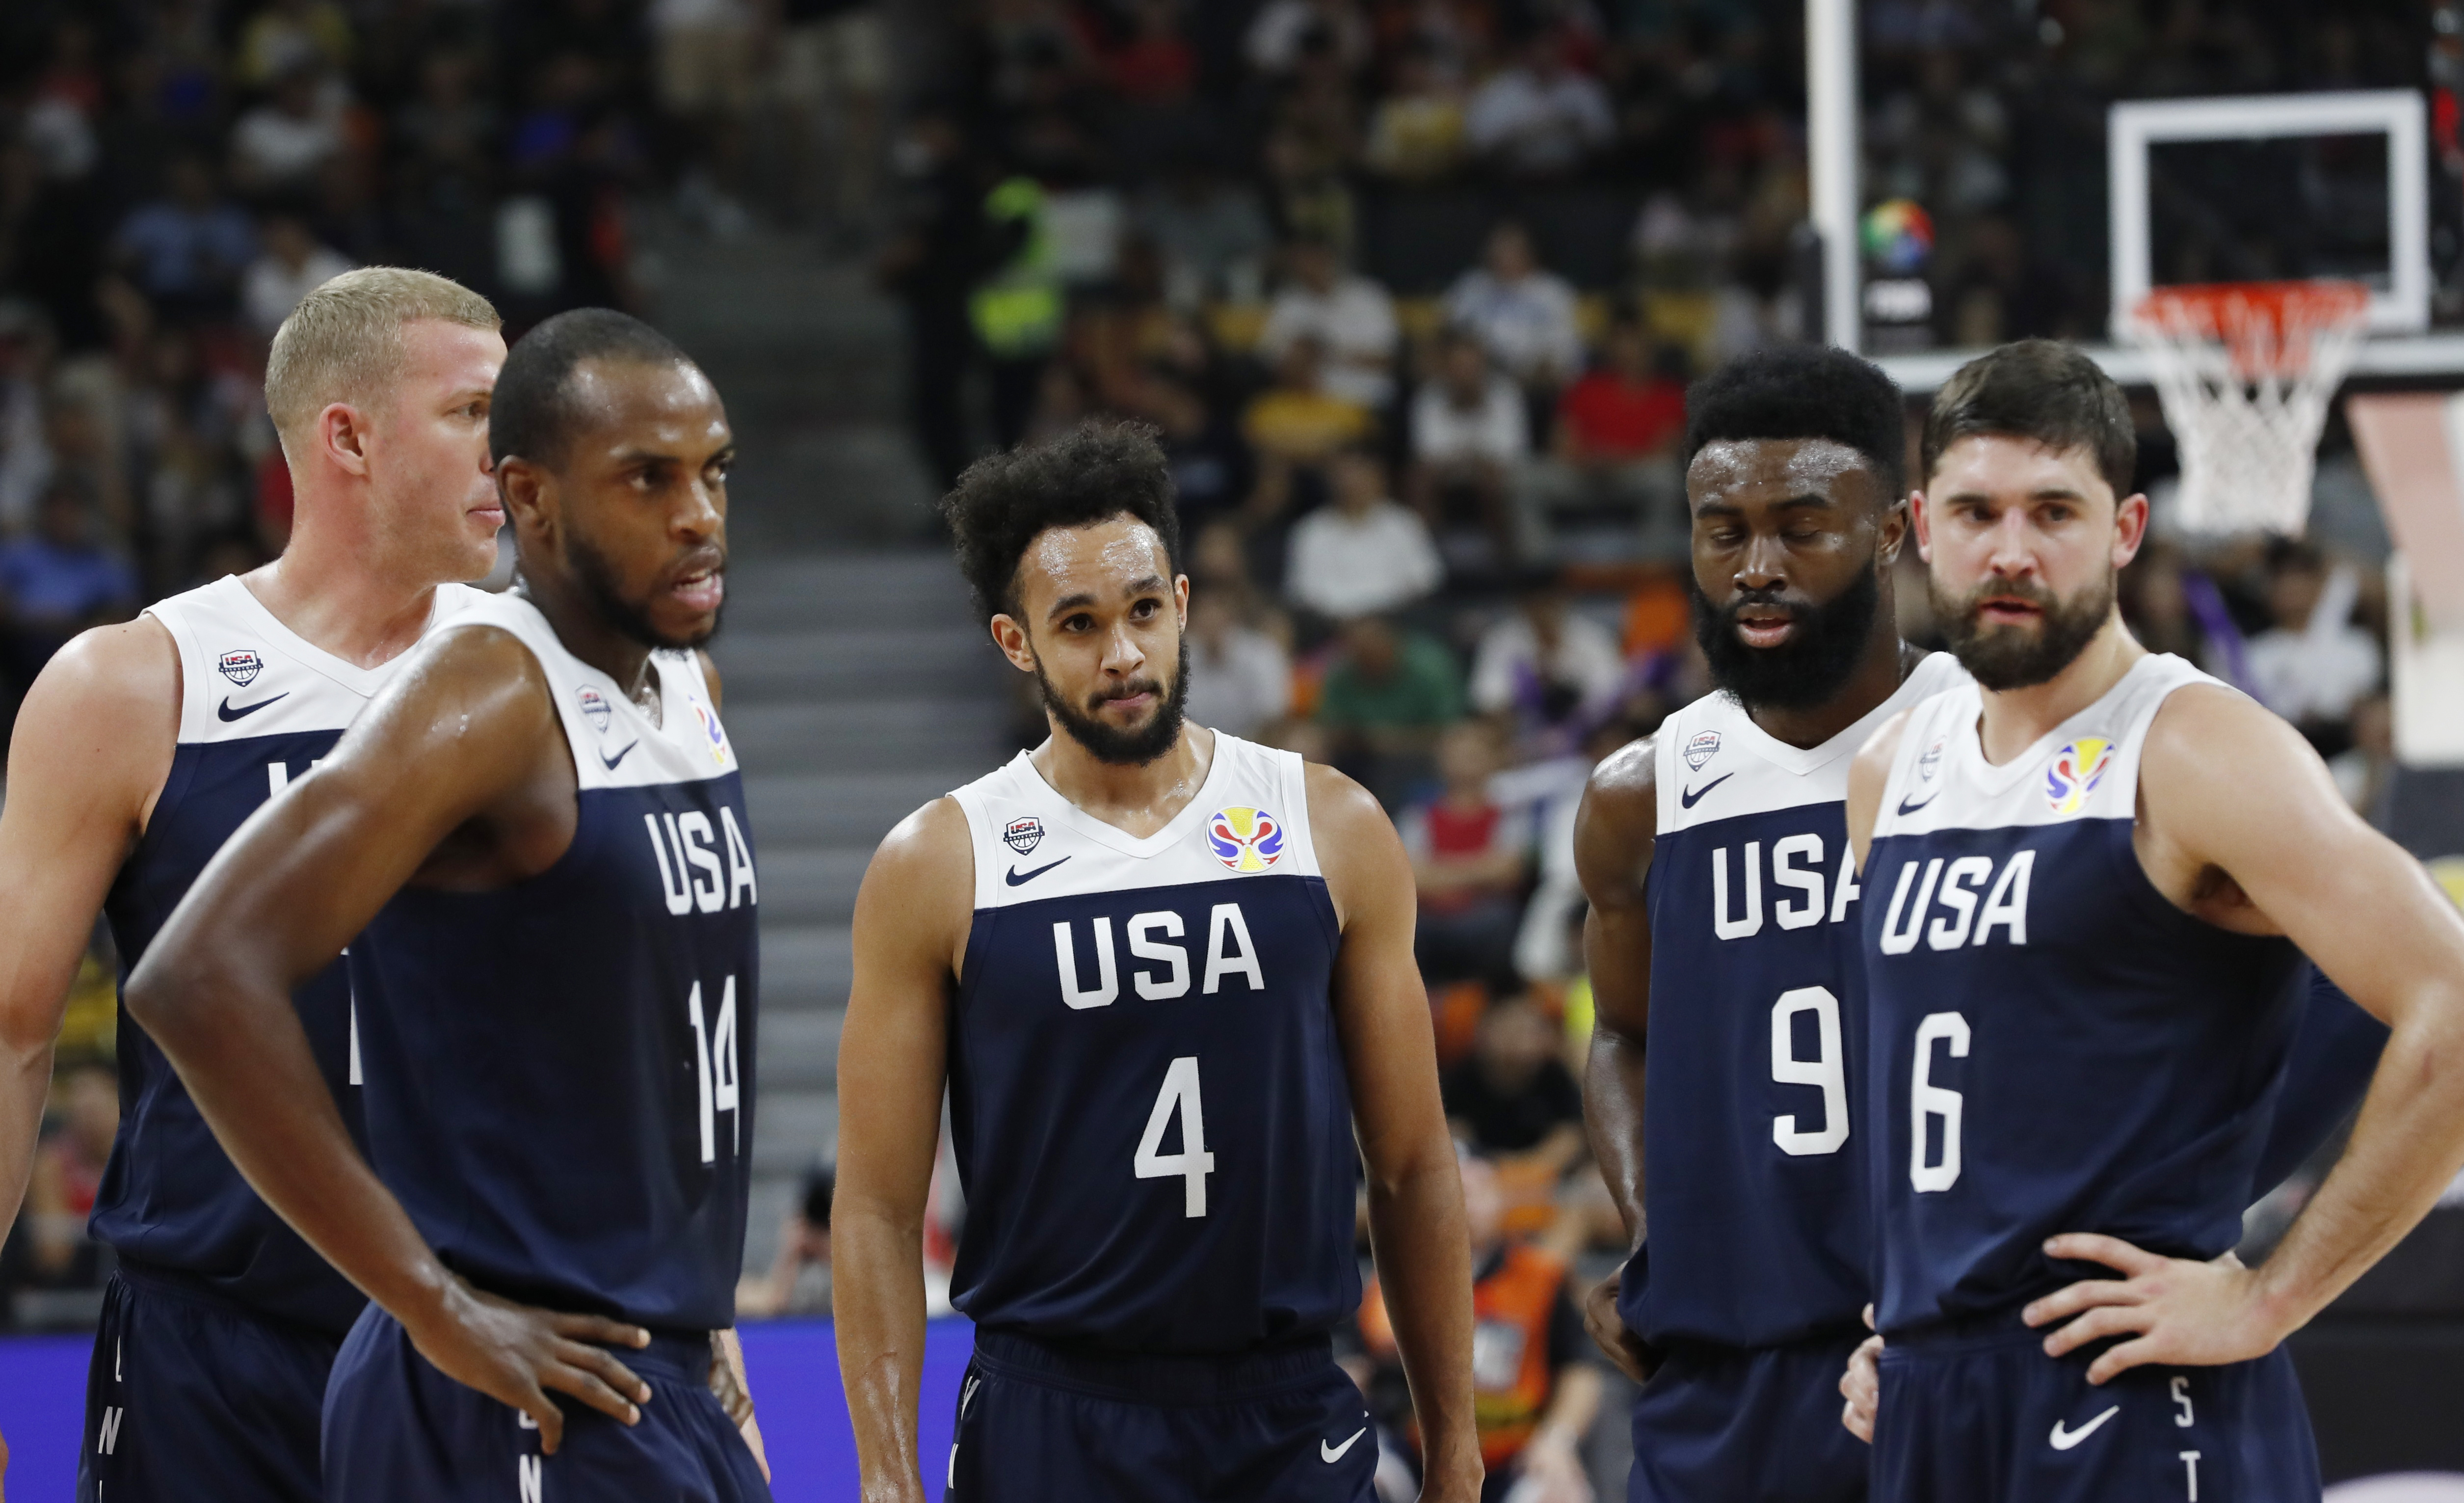 Μουντομπάσκετ 2019 – ΗΠΑ: Στη χειρότερη τους θέση! “Μαύρη σελίδα” για τους Αμερικανούς